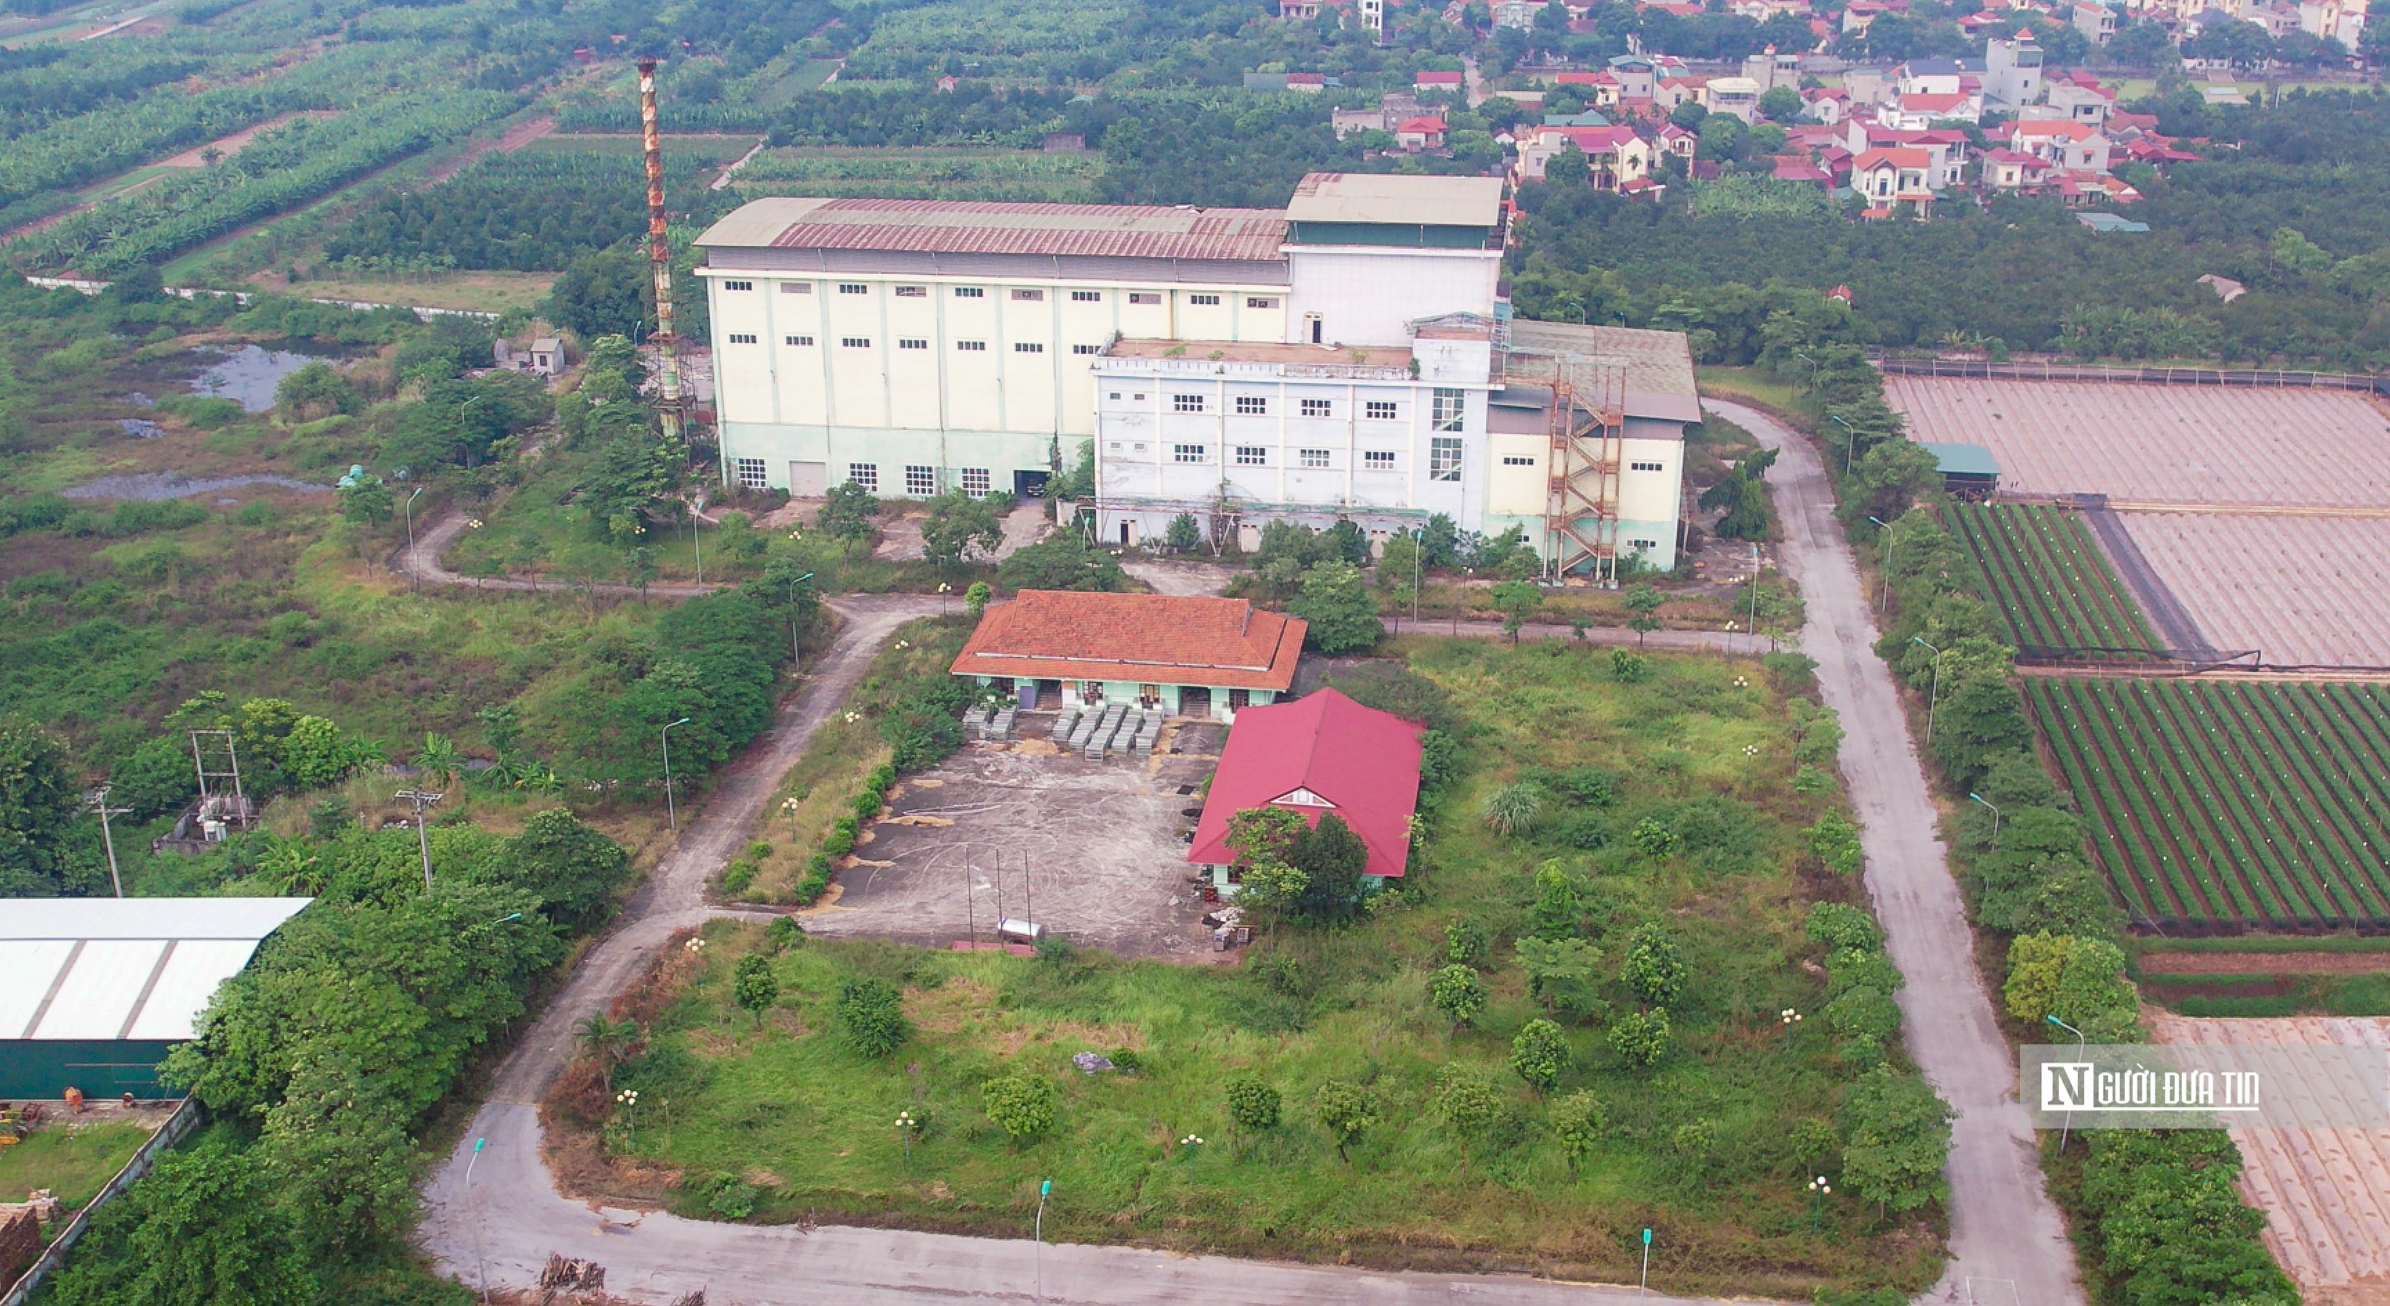 Dân sinh - Hà Nội: Cận cảnh nhà máy xử lý rác trăm tỷ bị bỏ hoang  (Hình 2).